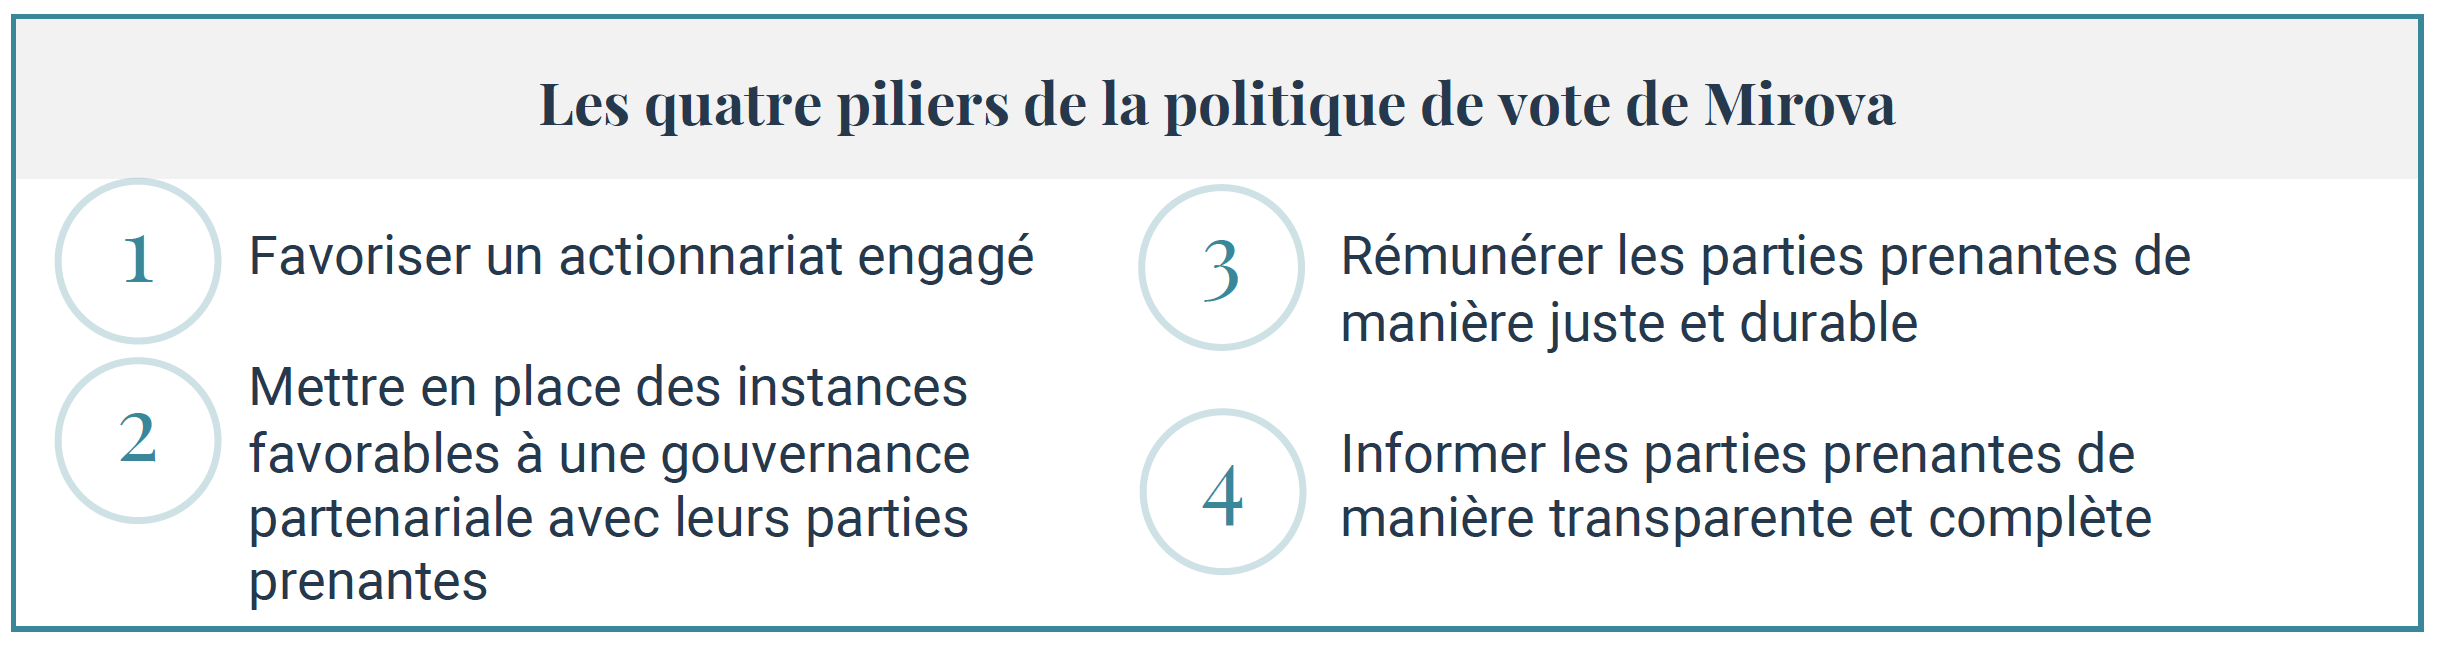 piliers-politique-vote-mirova-actionnariat-gouvernance-engagement